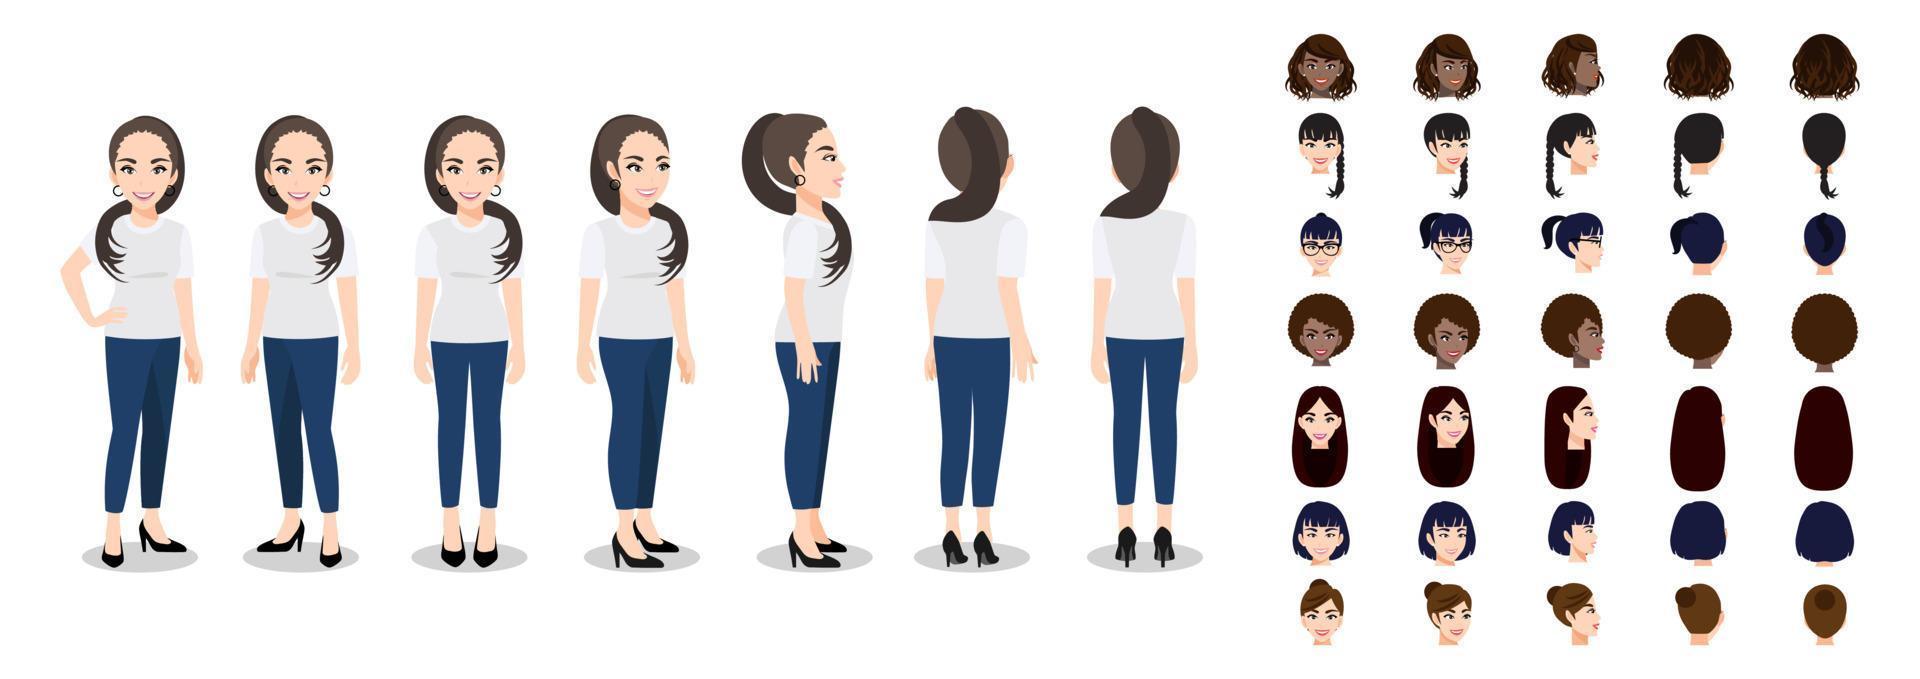 personaje de dibujos animados con una mujer en camiseta blanca casual para animación. carácter de vista frontal, lateral, posterior, 3-4. conjunto de cabeza femenina e ilustración vectorial plana. vector